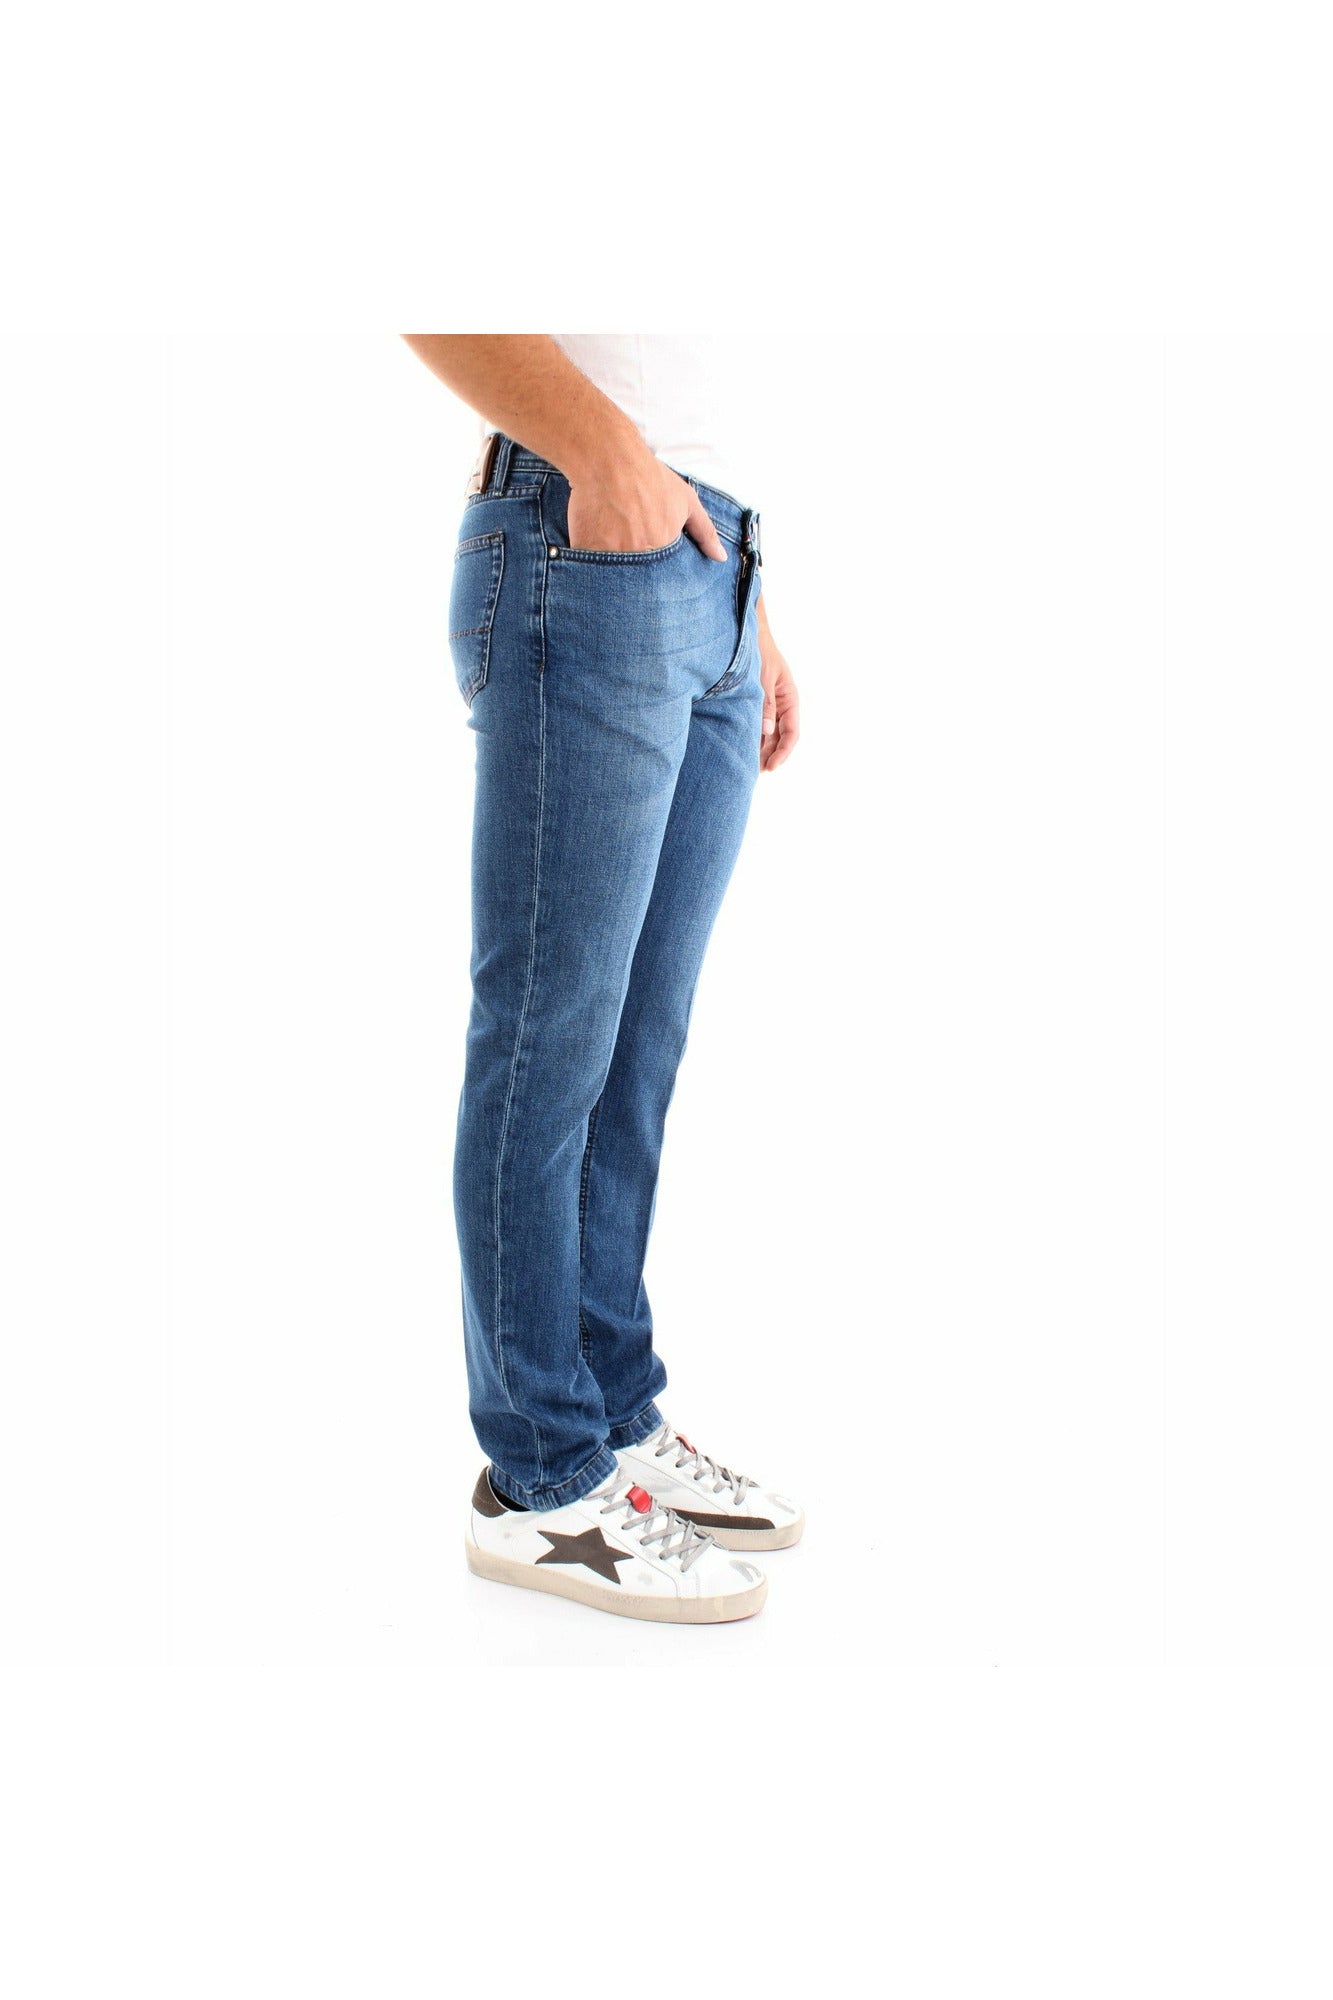 BSETTECENTO L702-2035AI21209 jeans cinque tasche slim fit